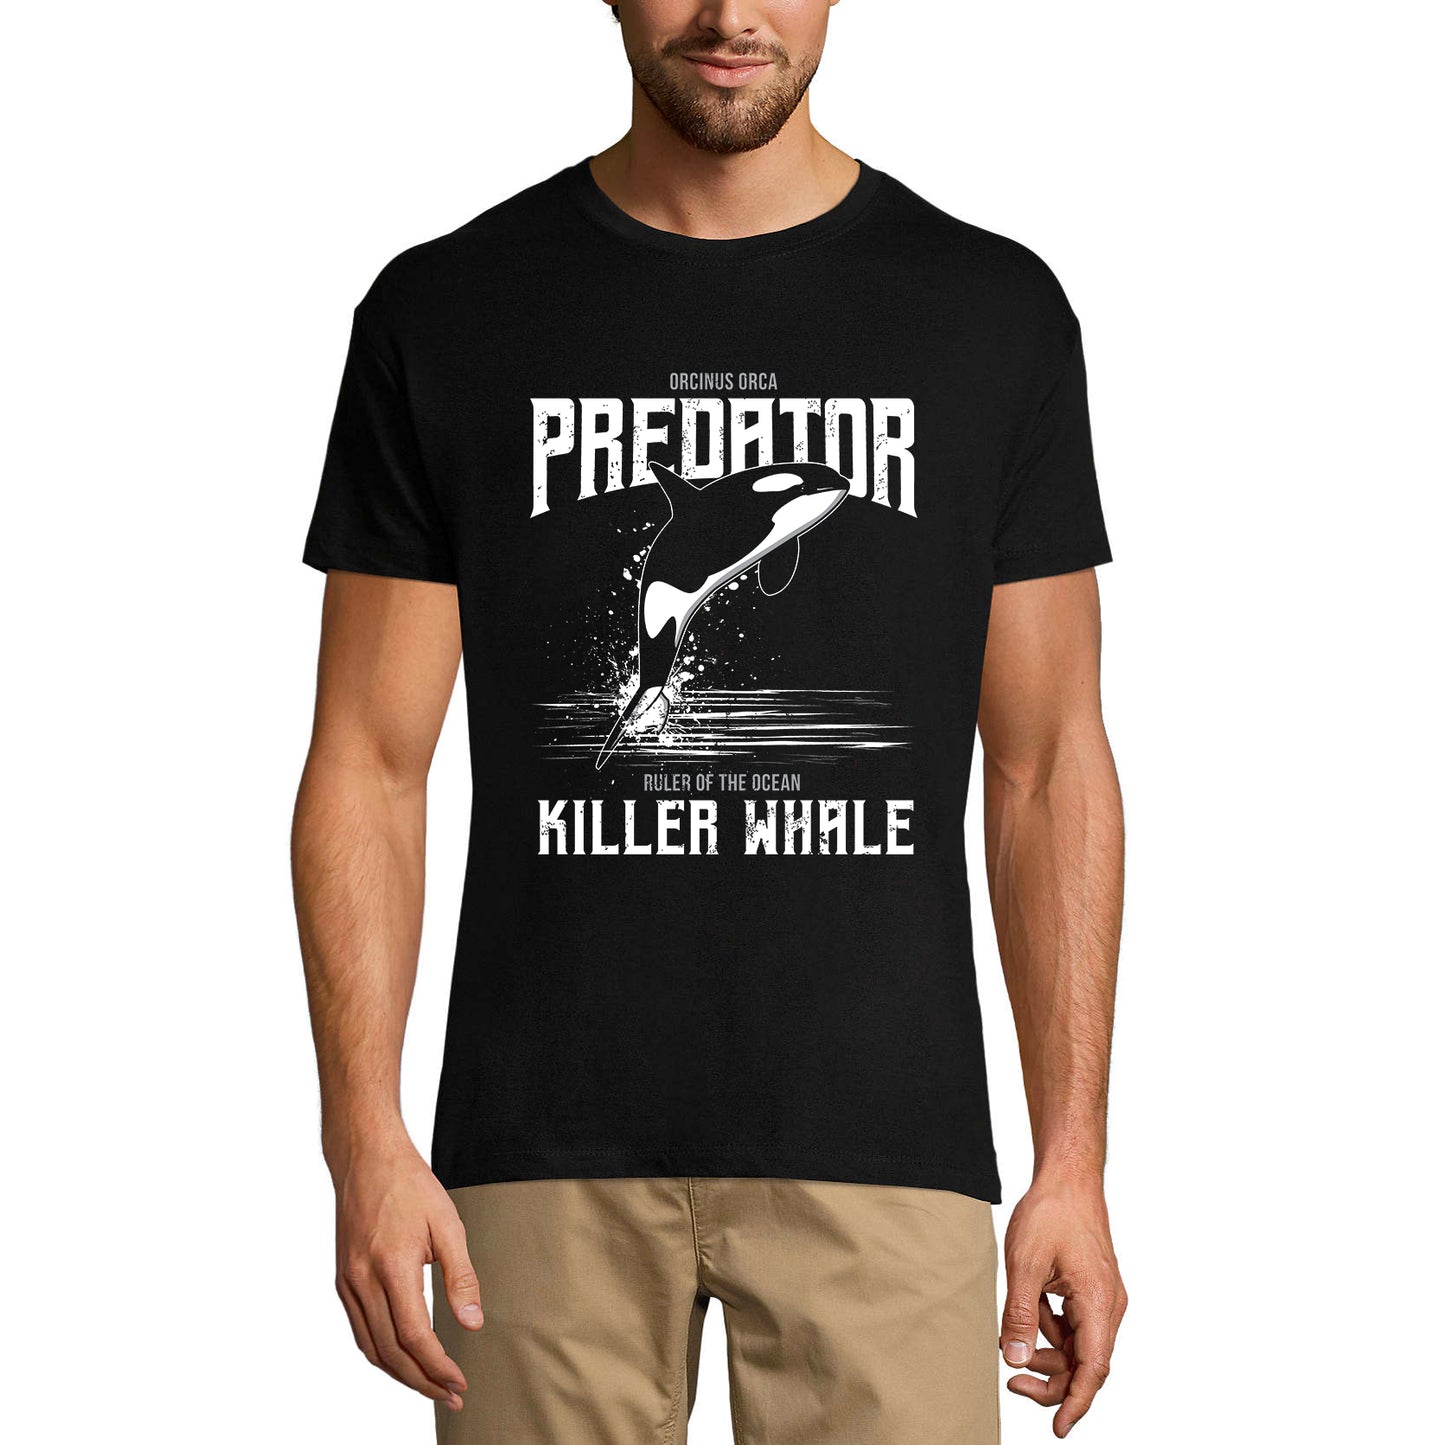 ULTRABASIC Men's Graphic T-Shirt Predator Killer Whale - Ruler of the Ocean Shirt